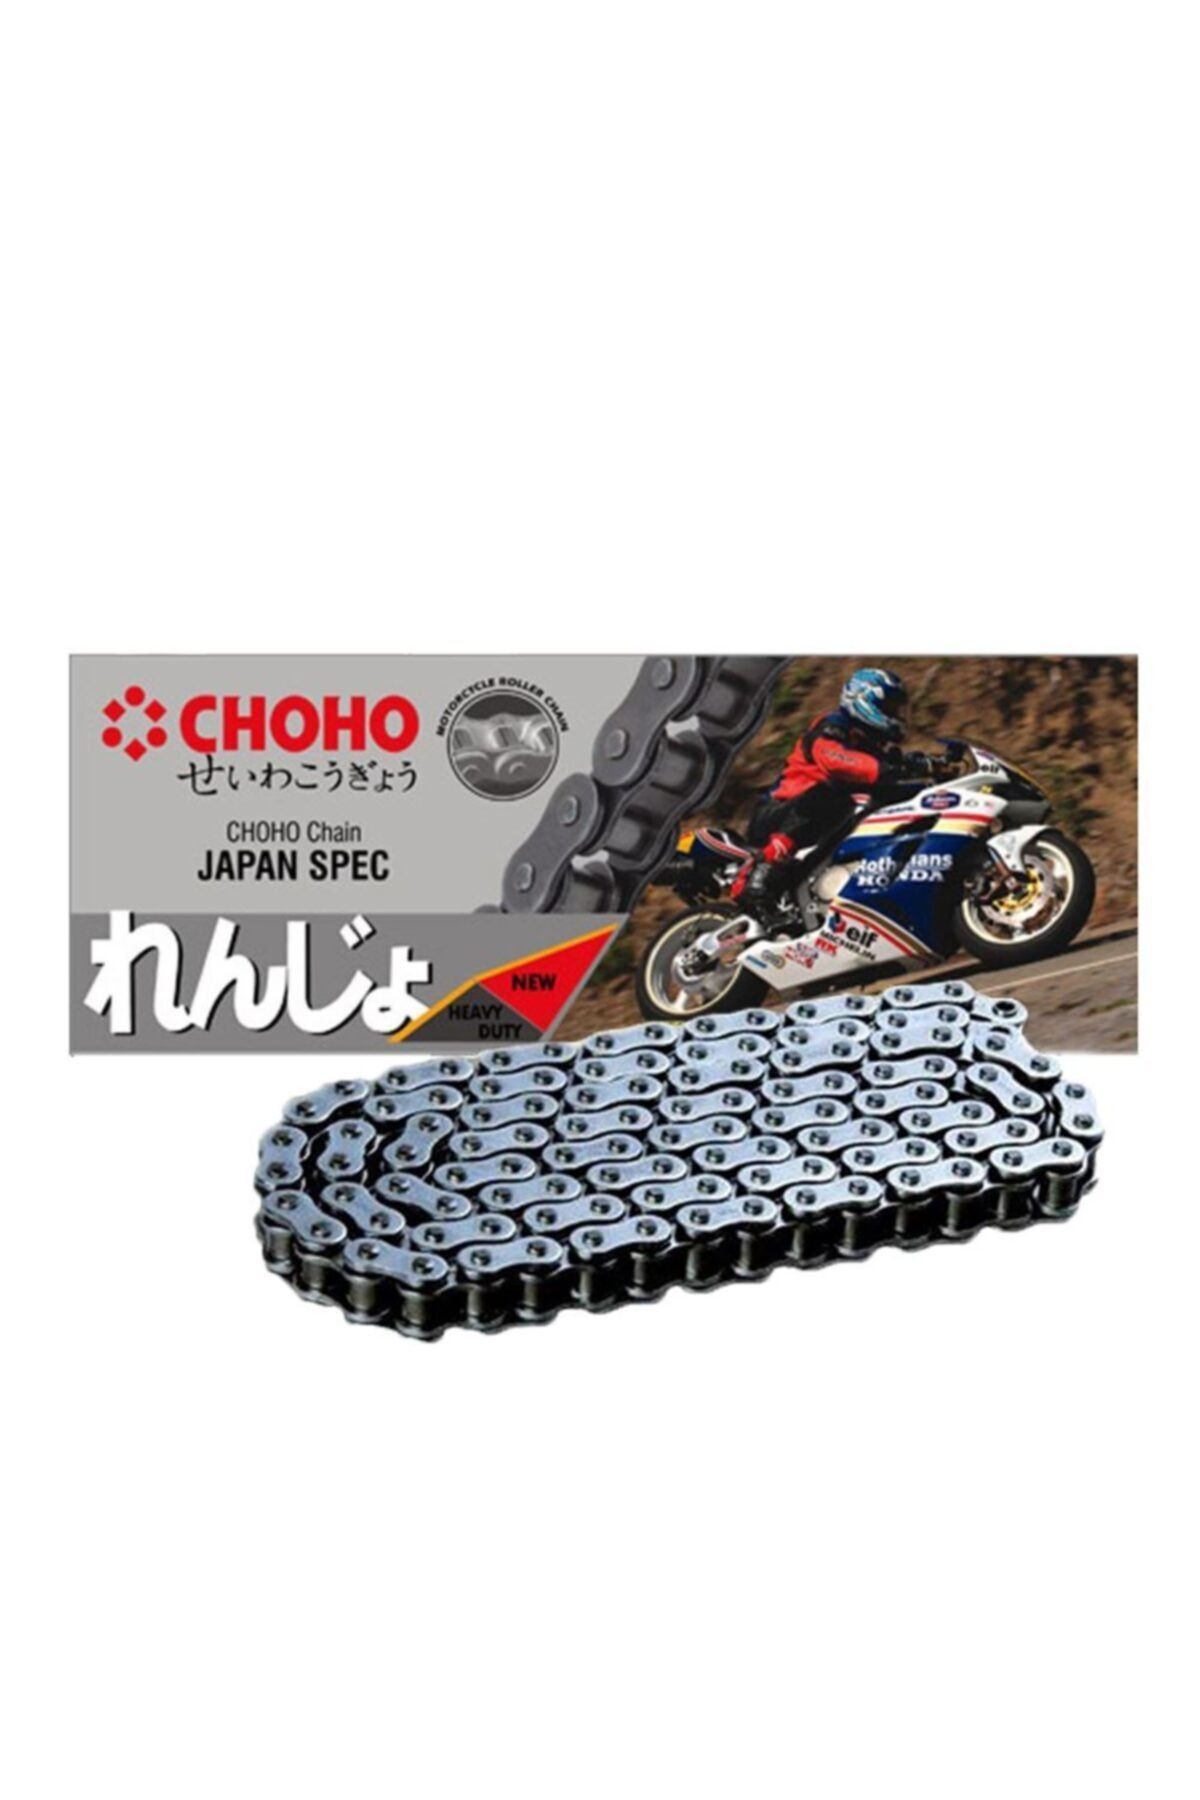 Yamaha T 110 C Crypton Choho O-ring Zincir 428 Ho 100l 2009 - 2015